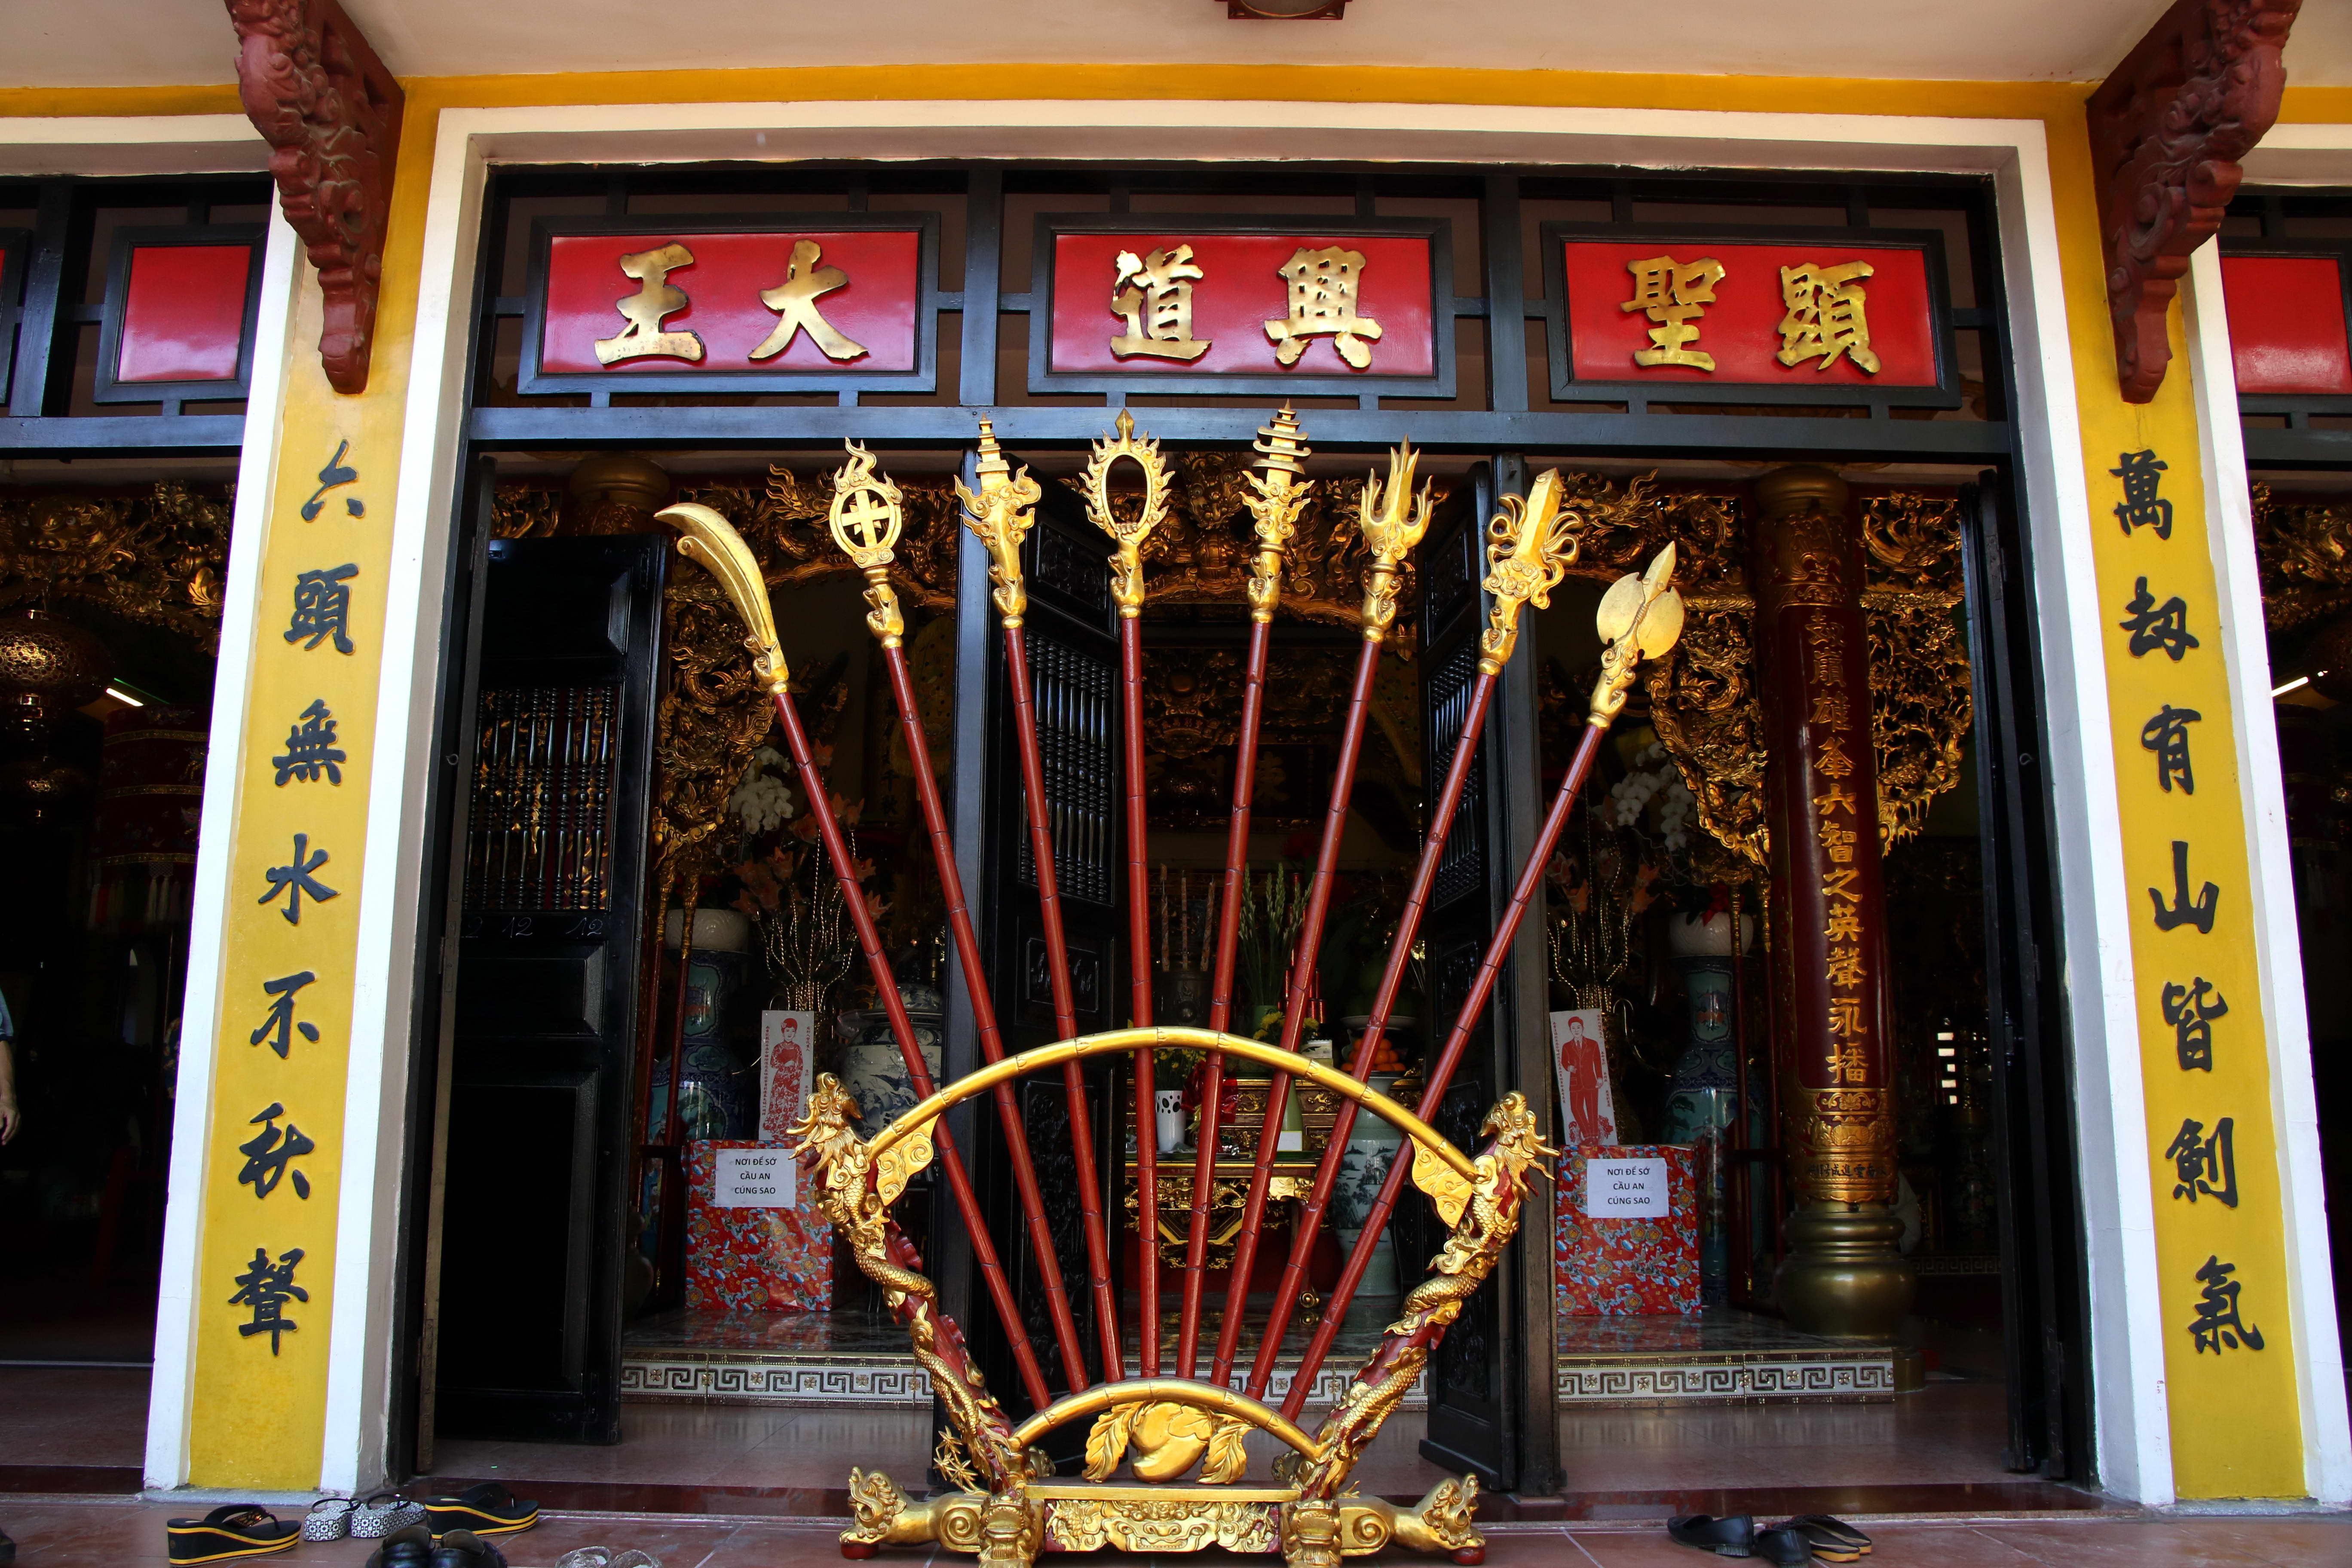 Chánh điện đền thờ Đức thánh Trần Hưng Đạo ở số 36 Võ Thị Sáu (P.Tân Định)